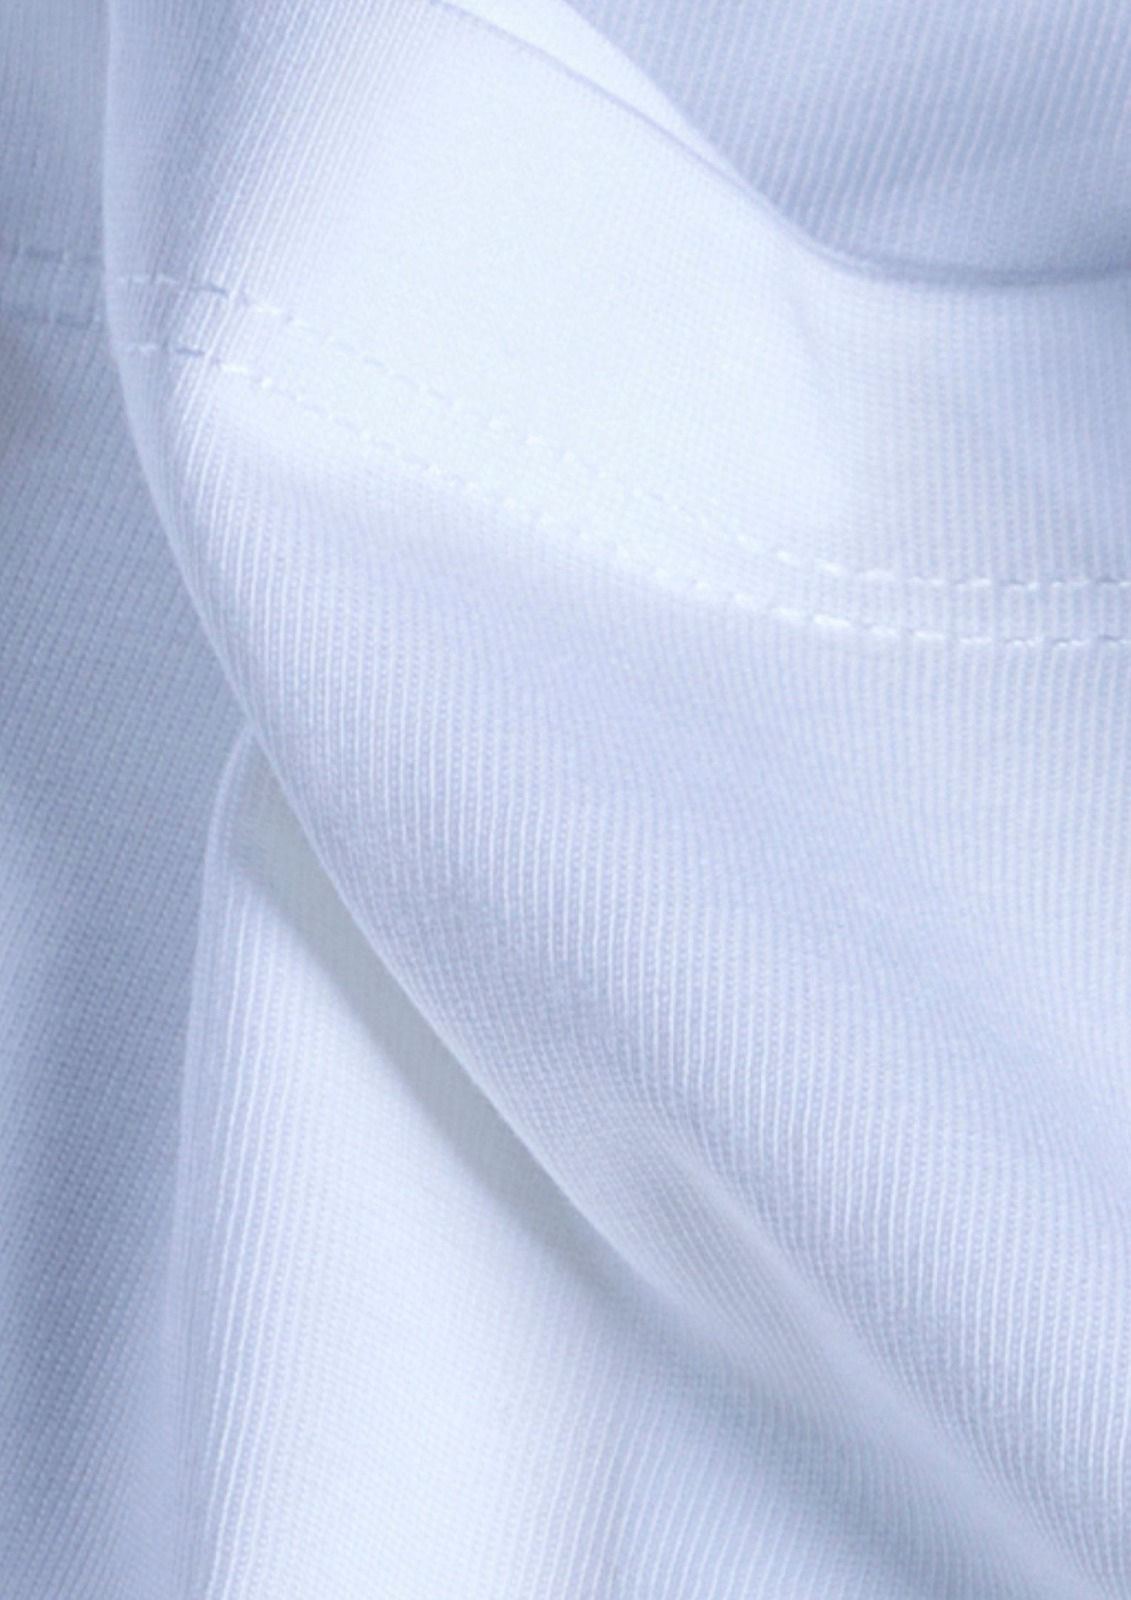 Iho F 4 Maxzone Clothing Mz Bio Cotton Mens Tshirts